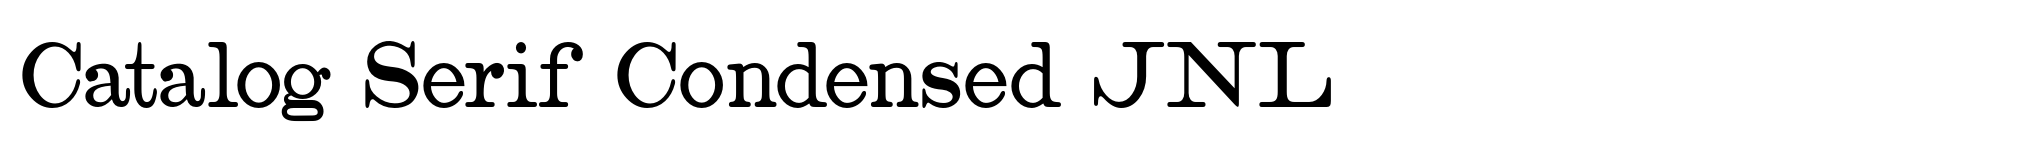 Catalog Serif Condensed JNL image